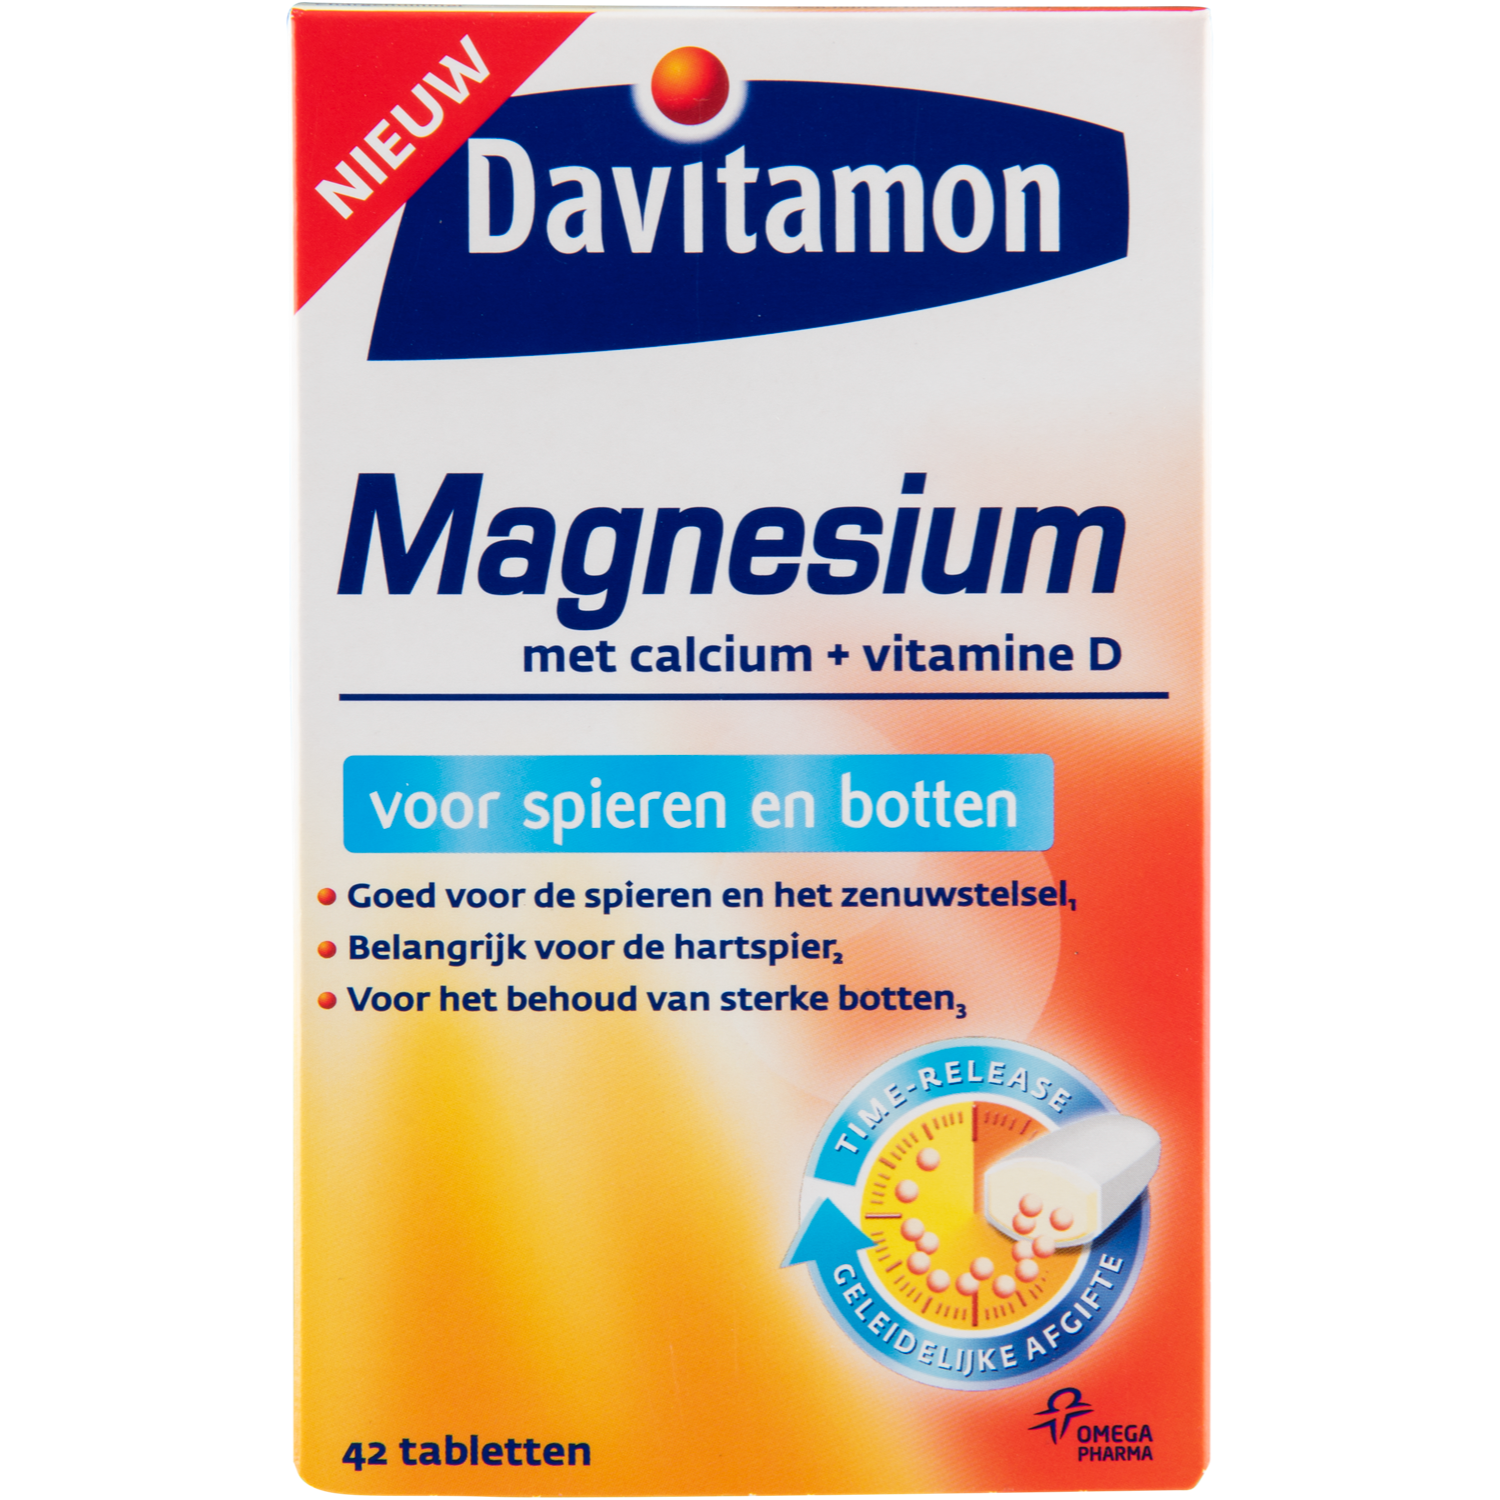 Davitamon Magnesium tabletten voor spieren en botten